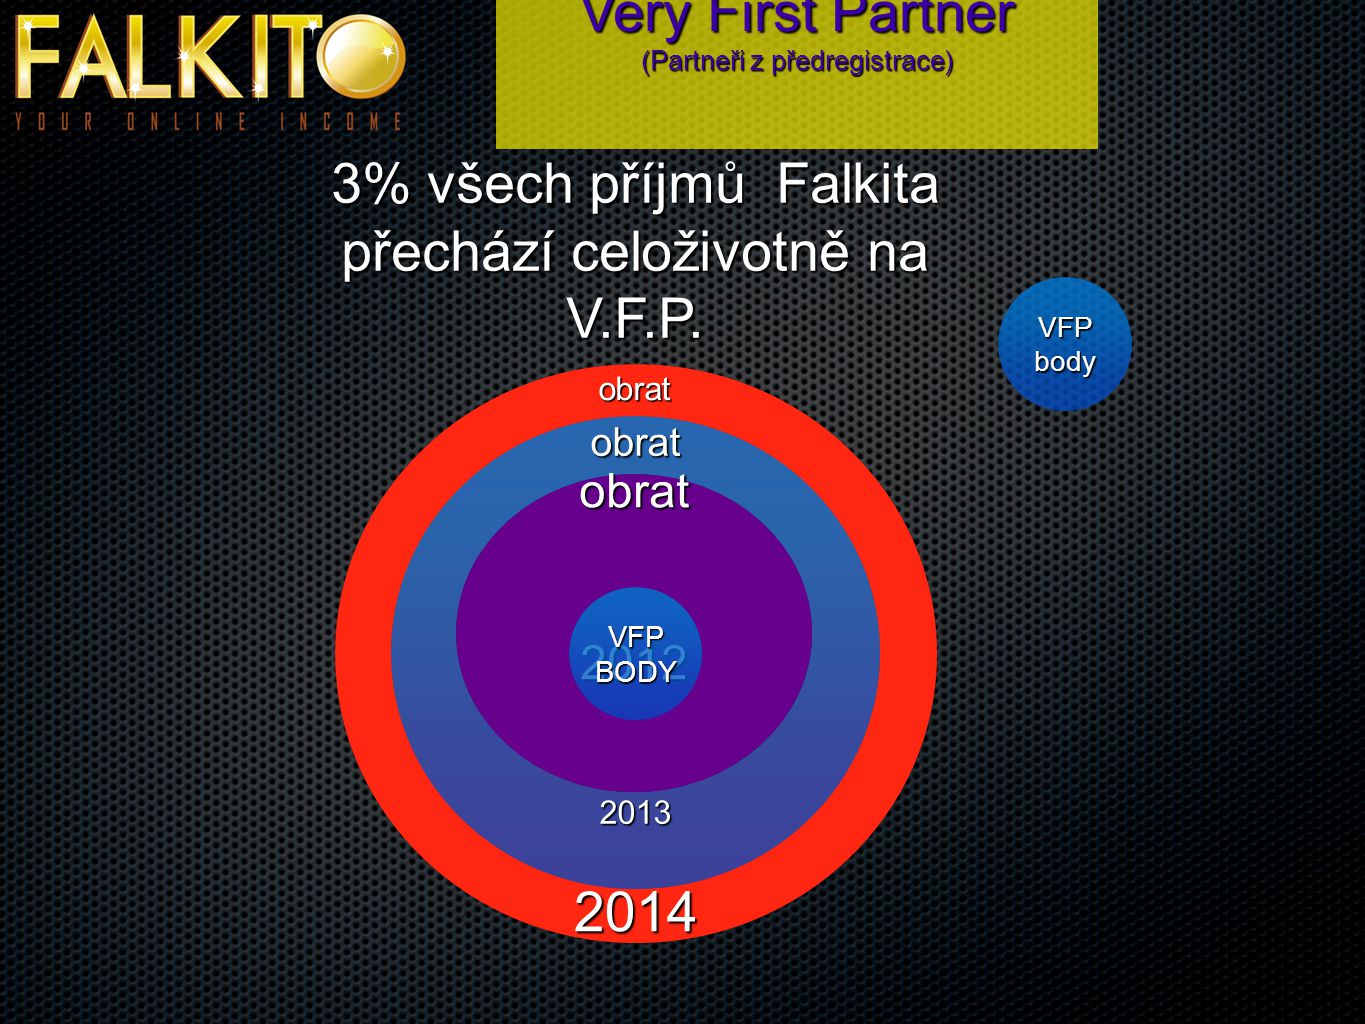 Very First Partner (Partneři z předregistrace) 3% všech příjmů Falkita přechází celoživotně na V.F.P.